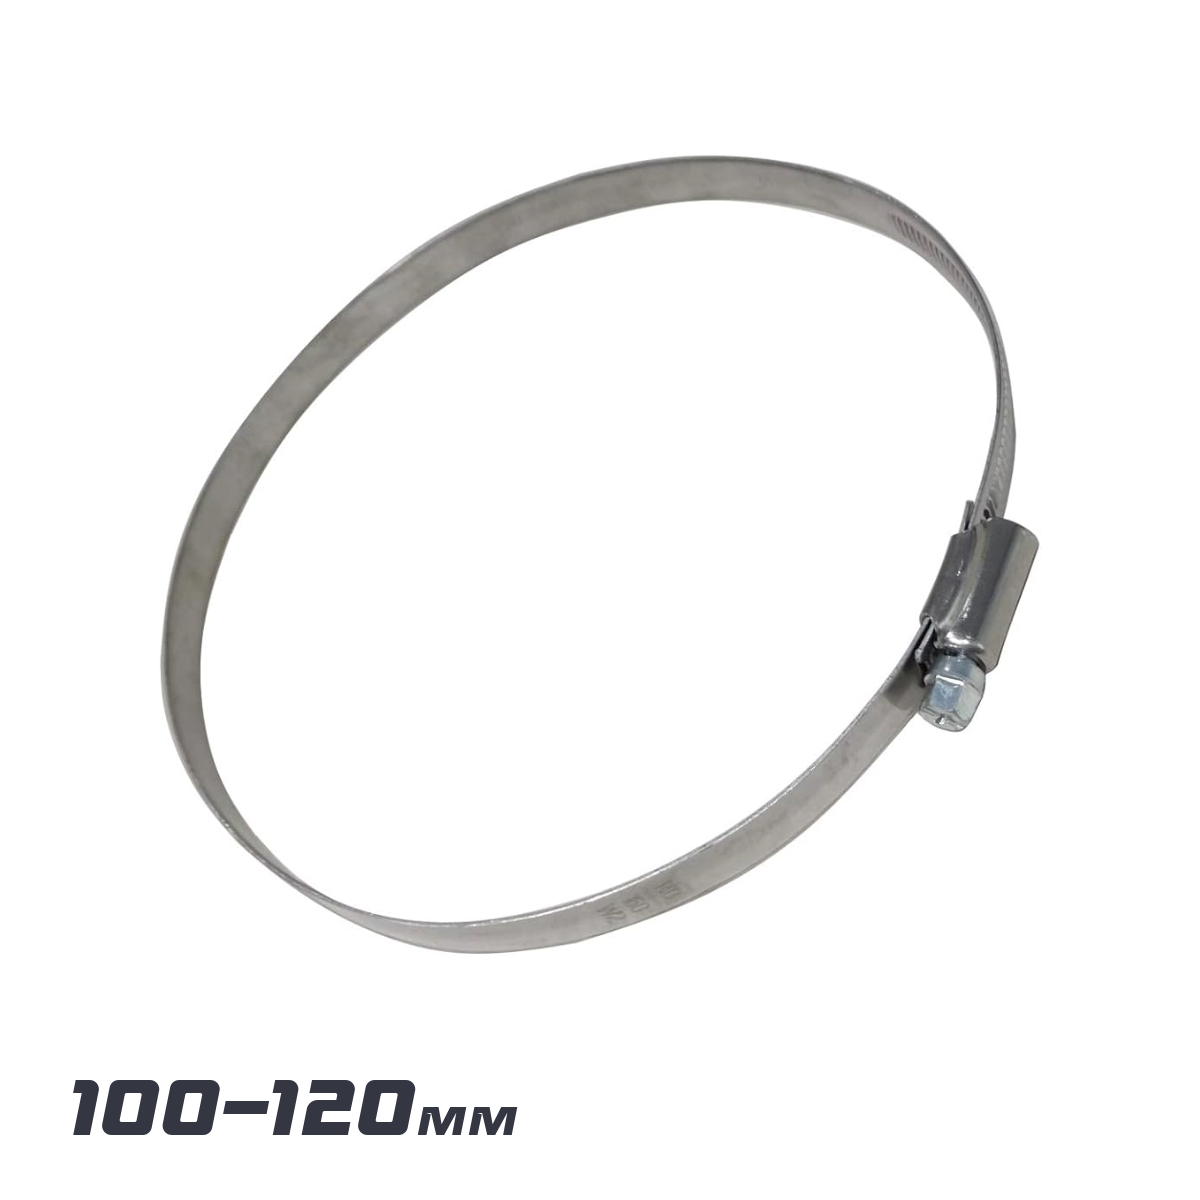 Steel zip-tie 100-120mm